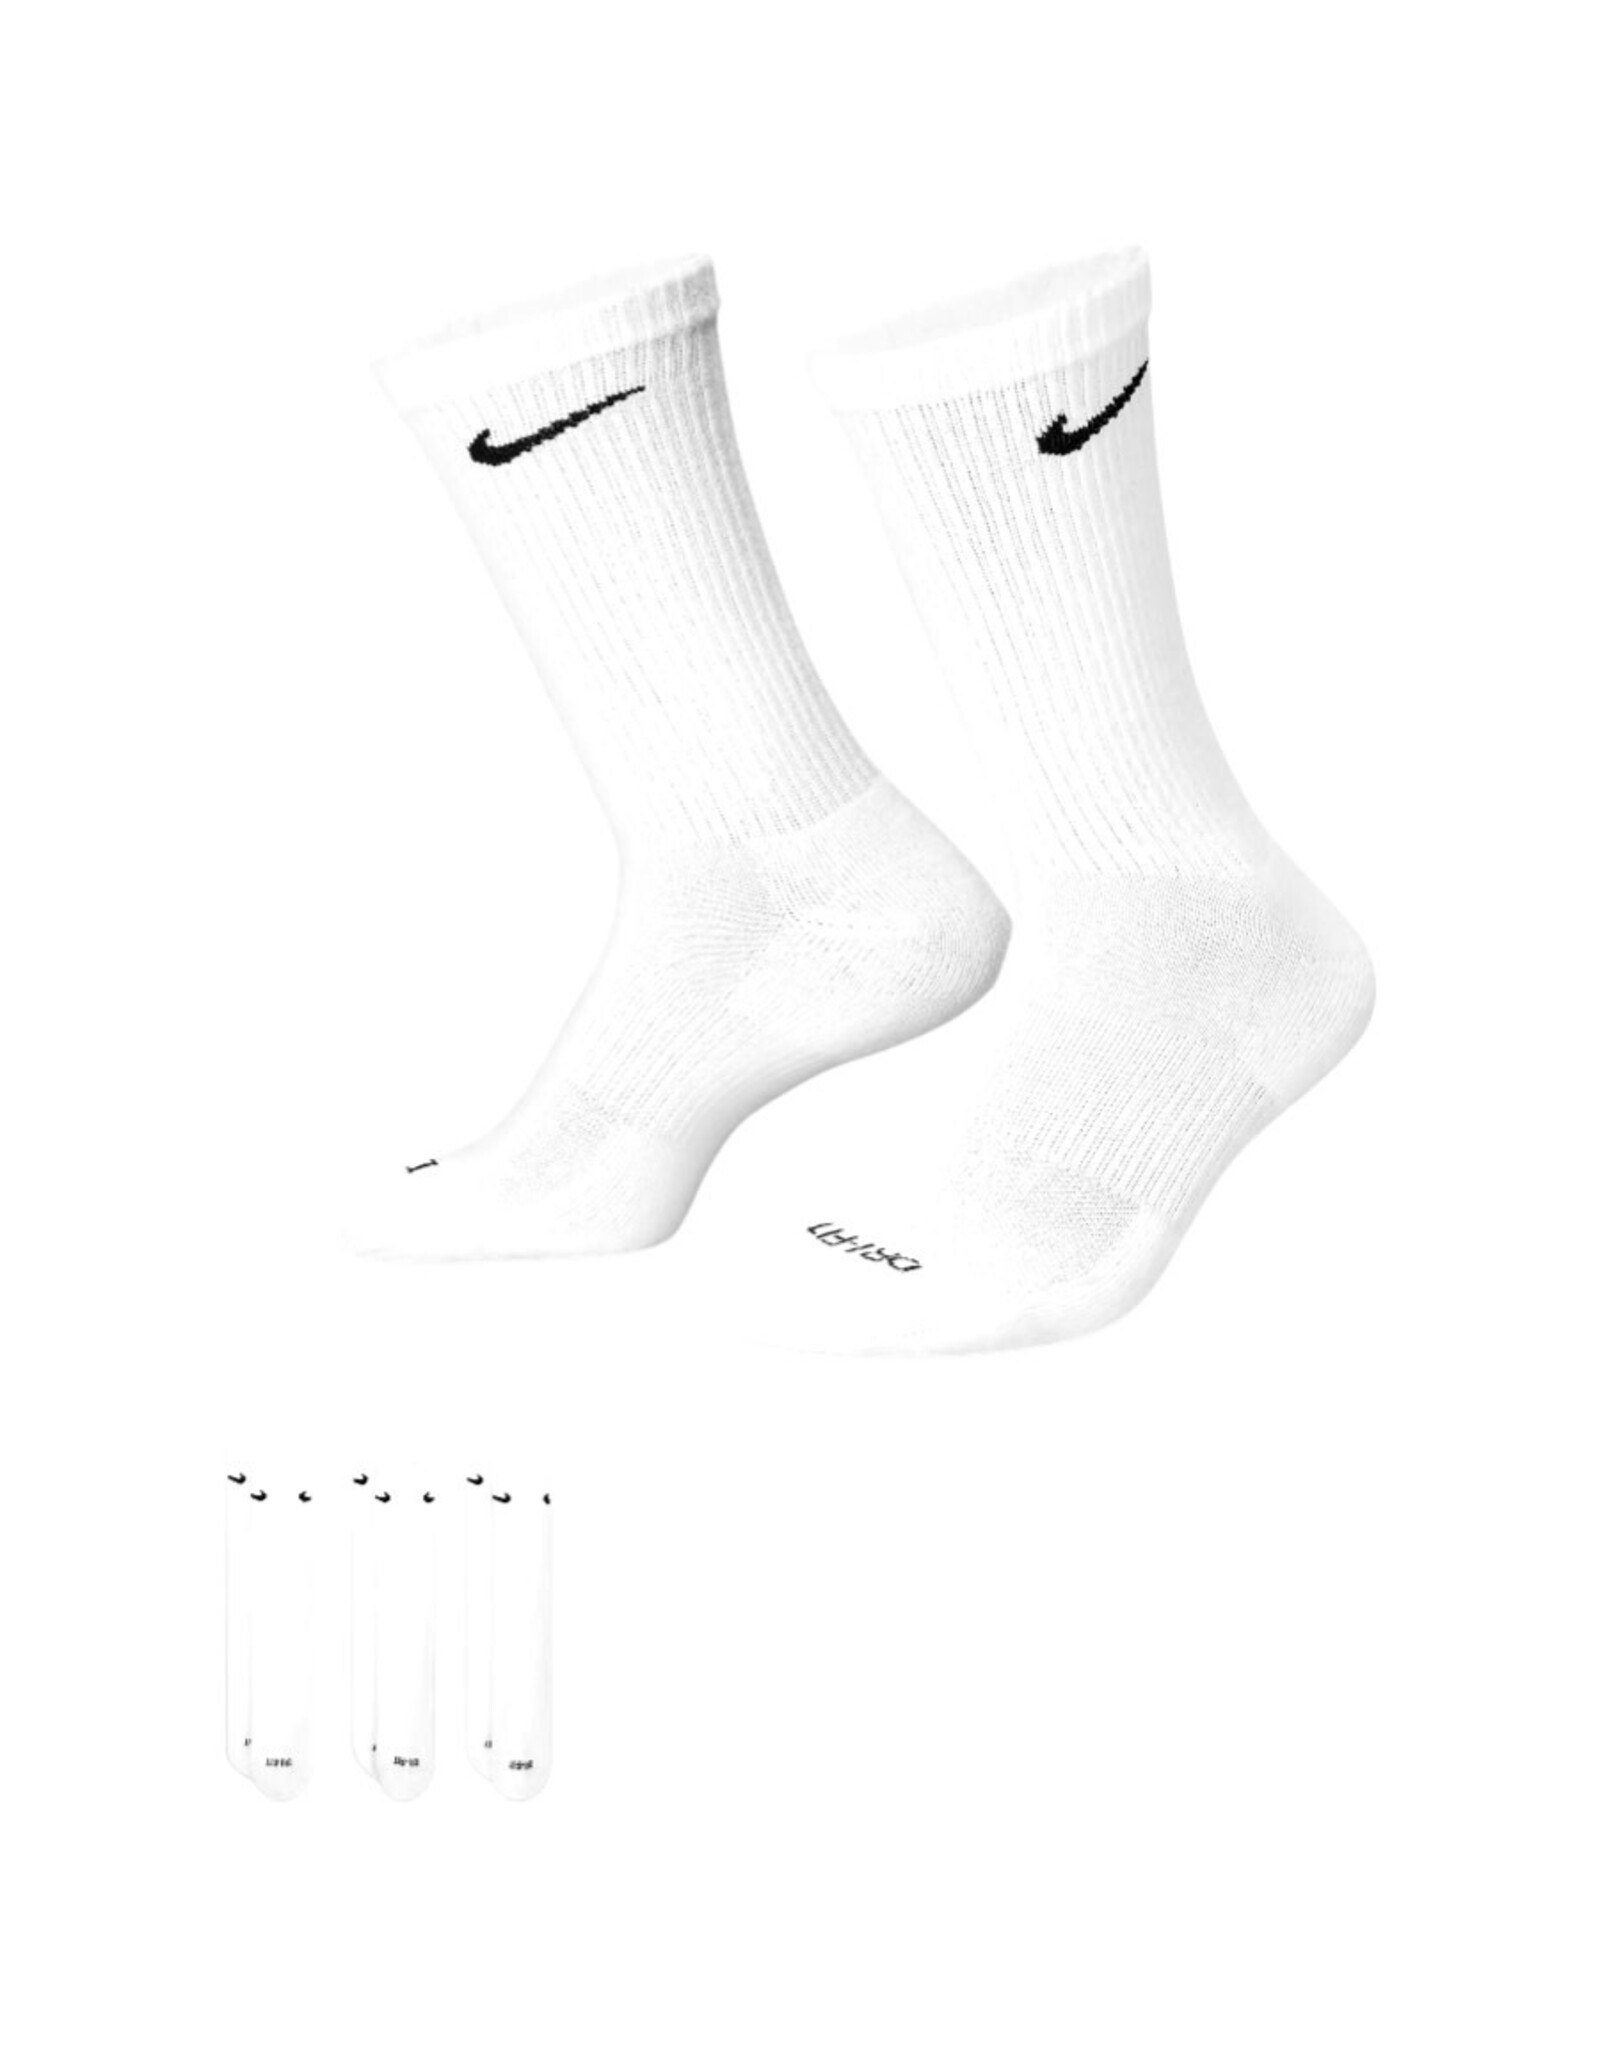 Nike SB Nike SB Socks Everyday Plus Cushioned Training Crew White/Black Large (3-Pack)